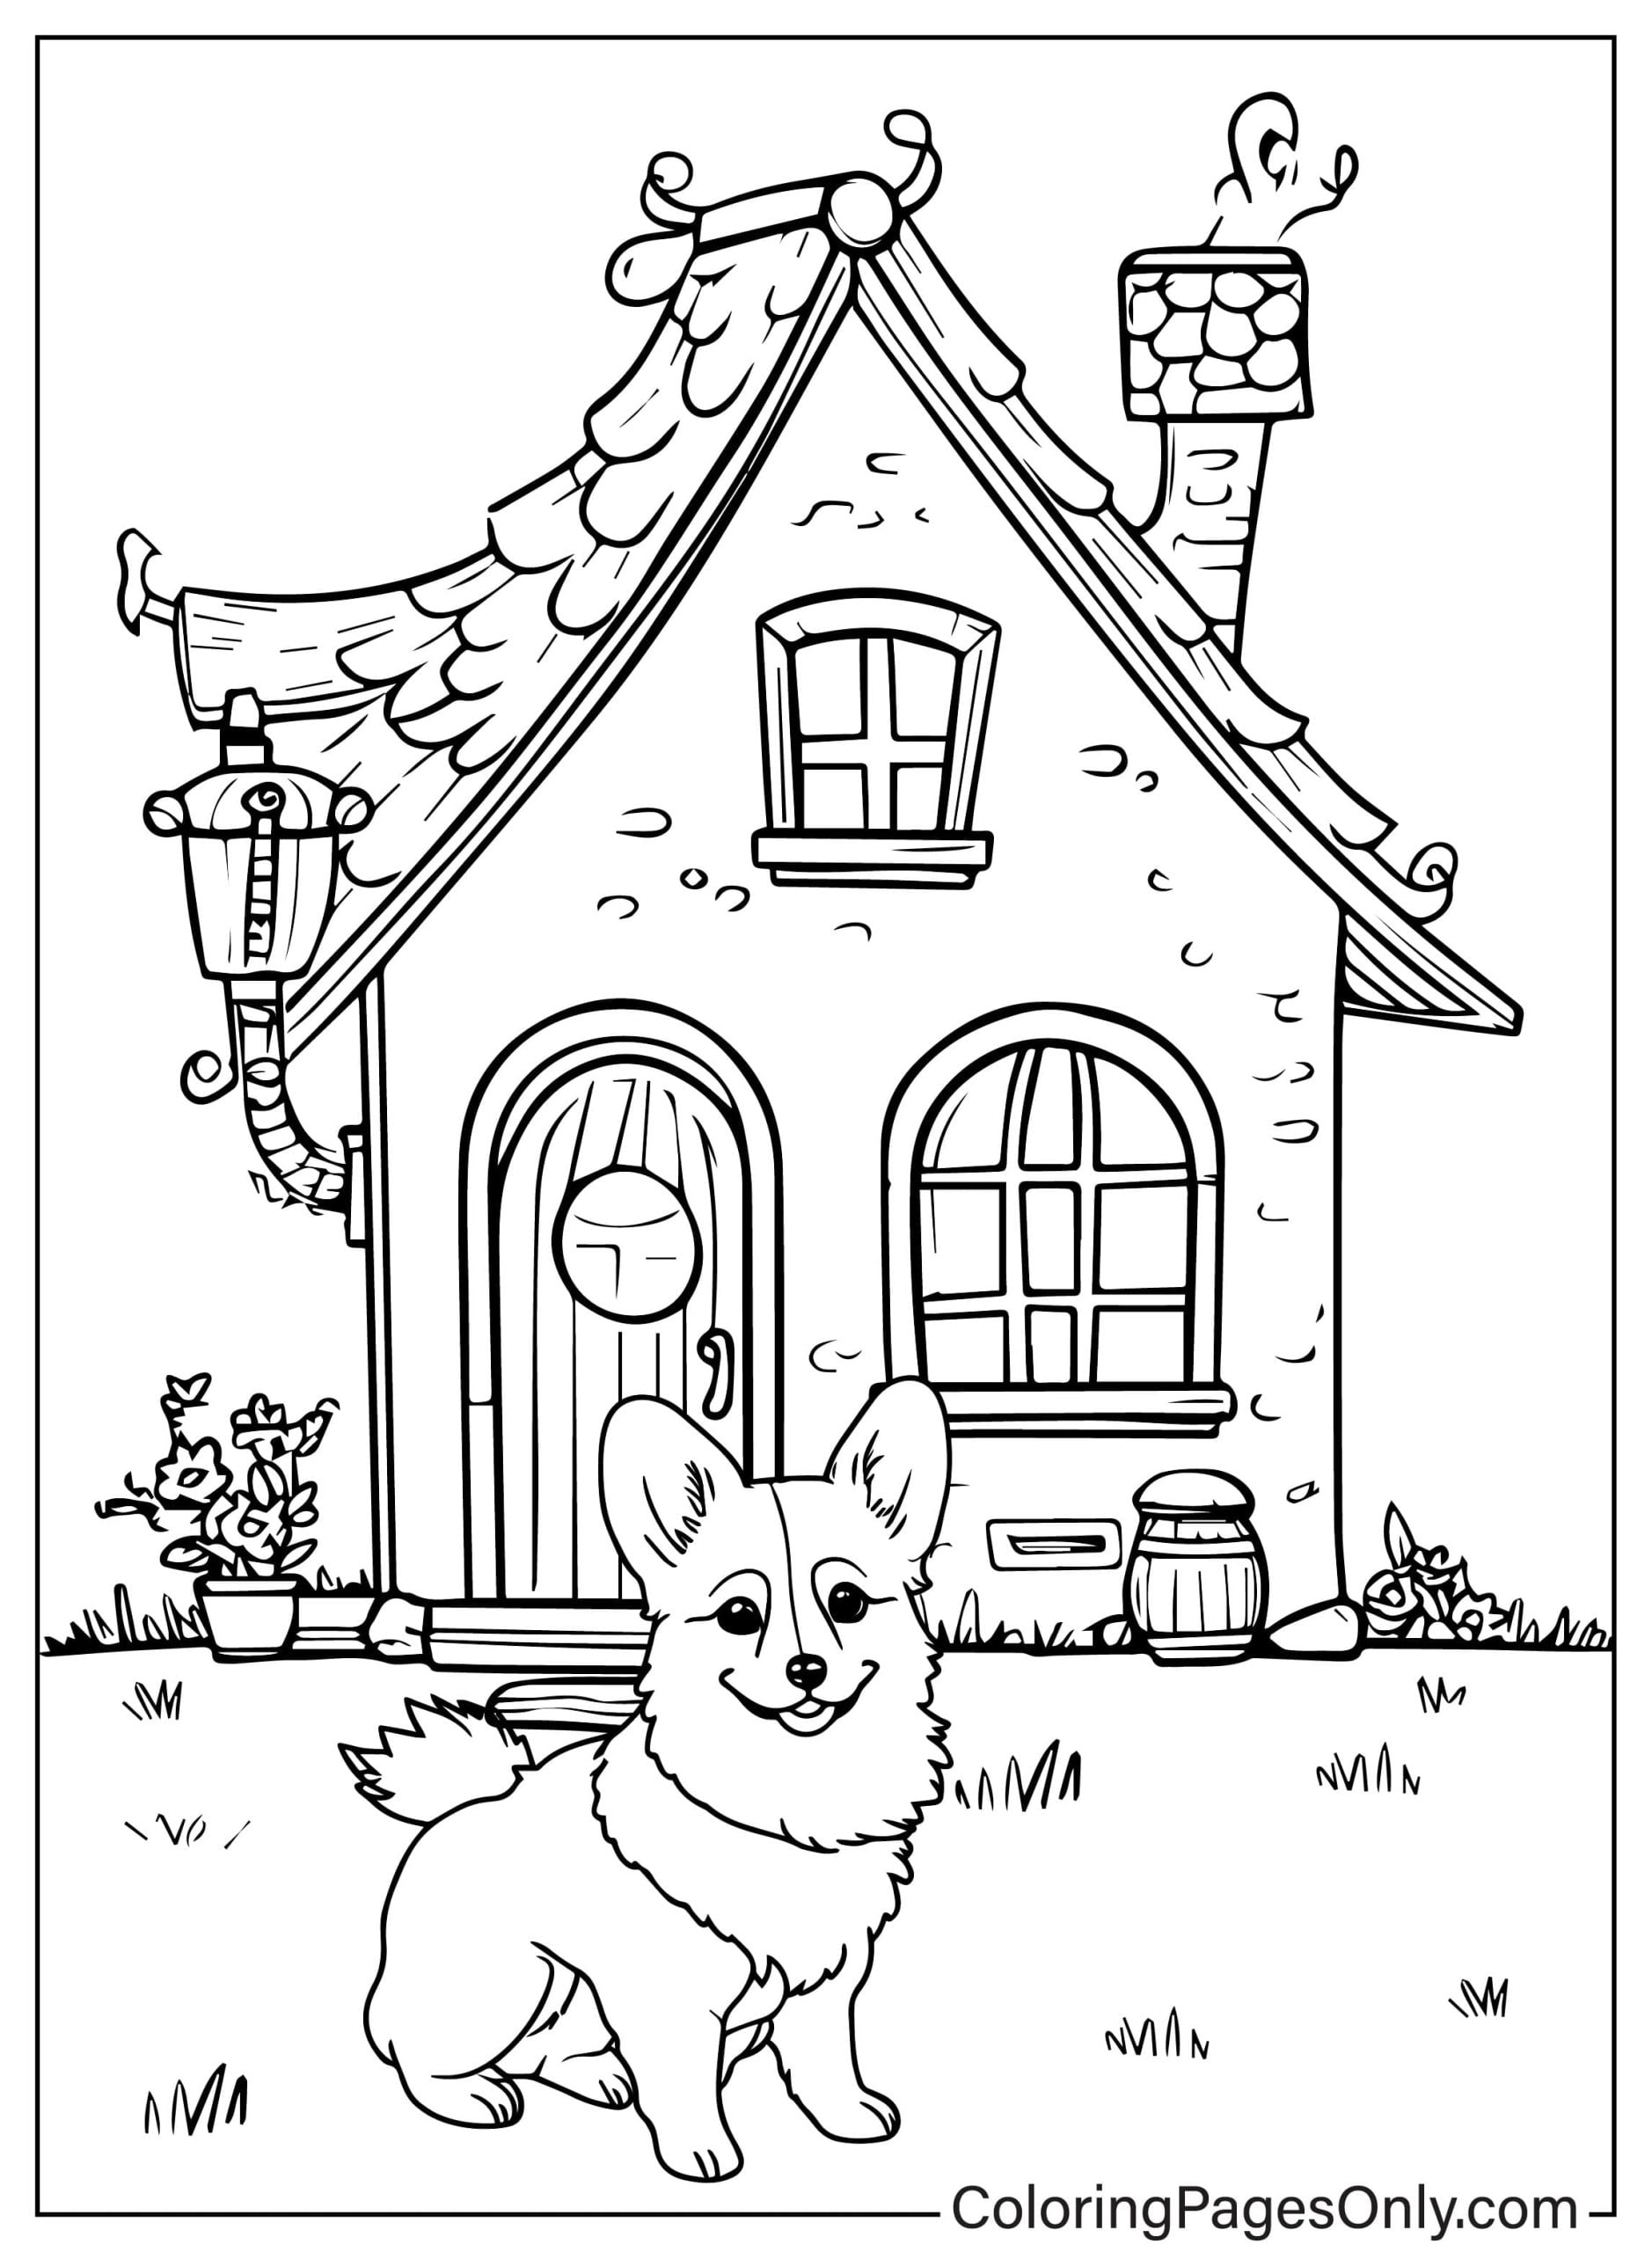 Il piccolo cane Corgi siede felicemente e custodisce la casa da Corgi